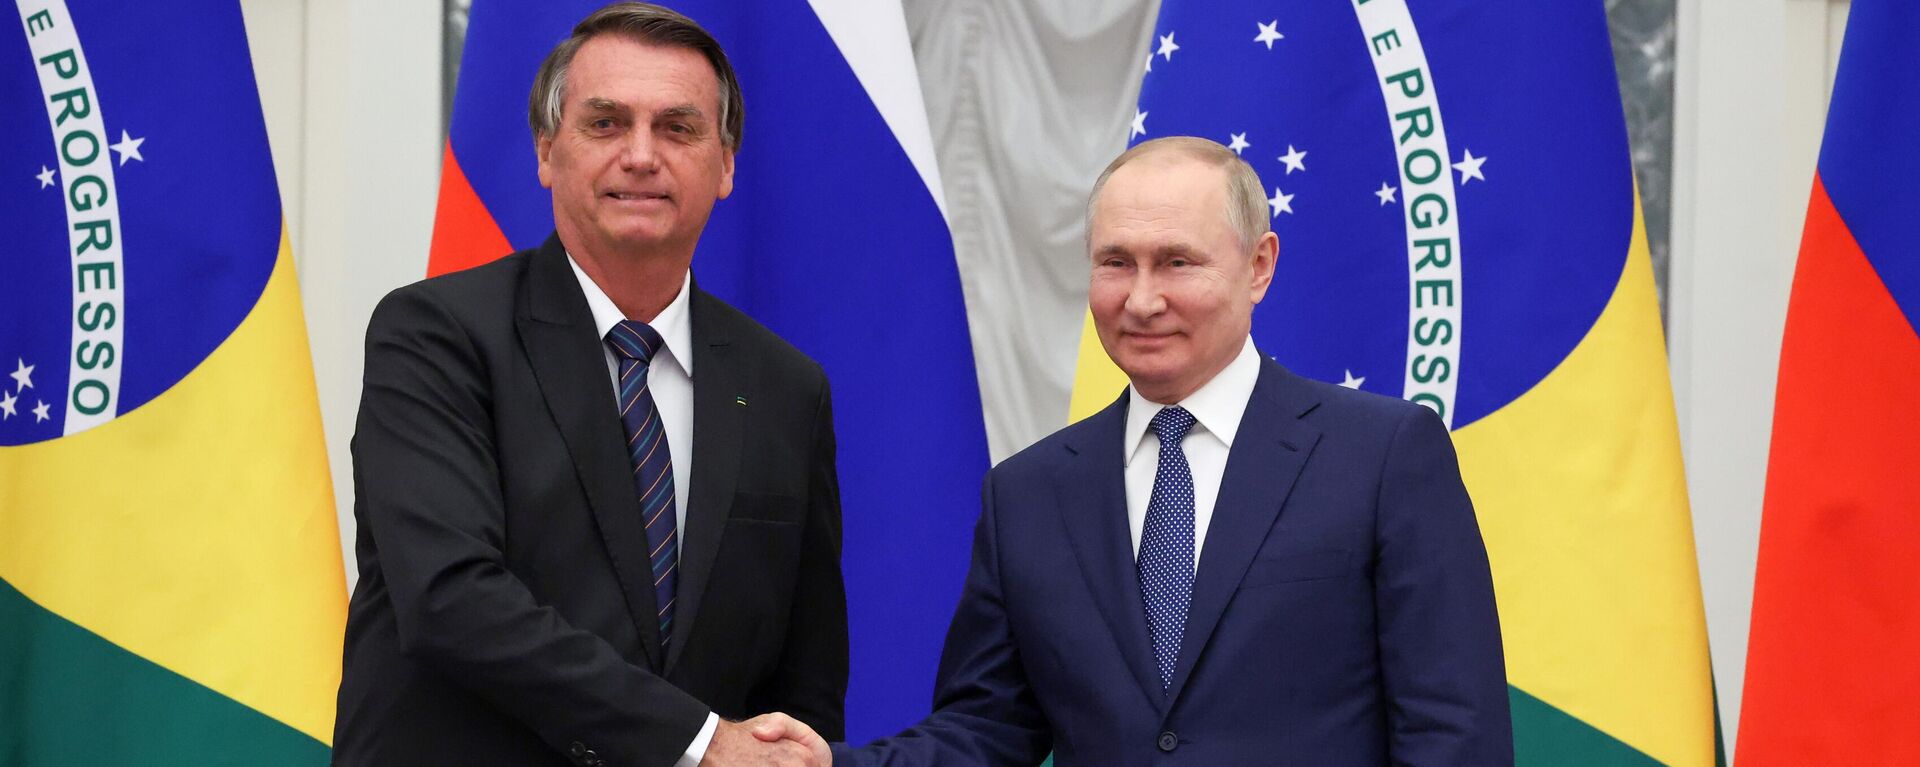 Jair Bolsonaro e Vladimir Putin, presidentes do Brasil e da Rússia, respectivamente, após encontro oficial no Kremlin, Moscou, Rússia, 16 de fevereiro de 2022 - Sputnik Brasil, 1920, 22.06.2022